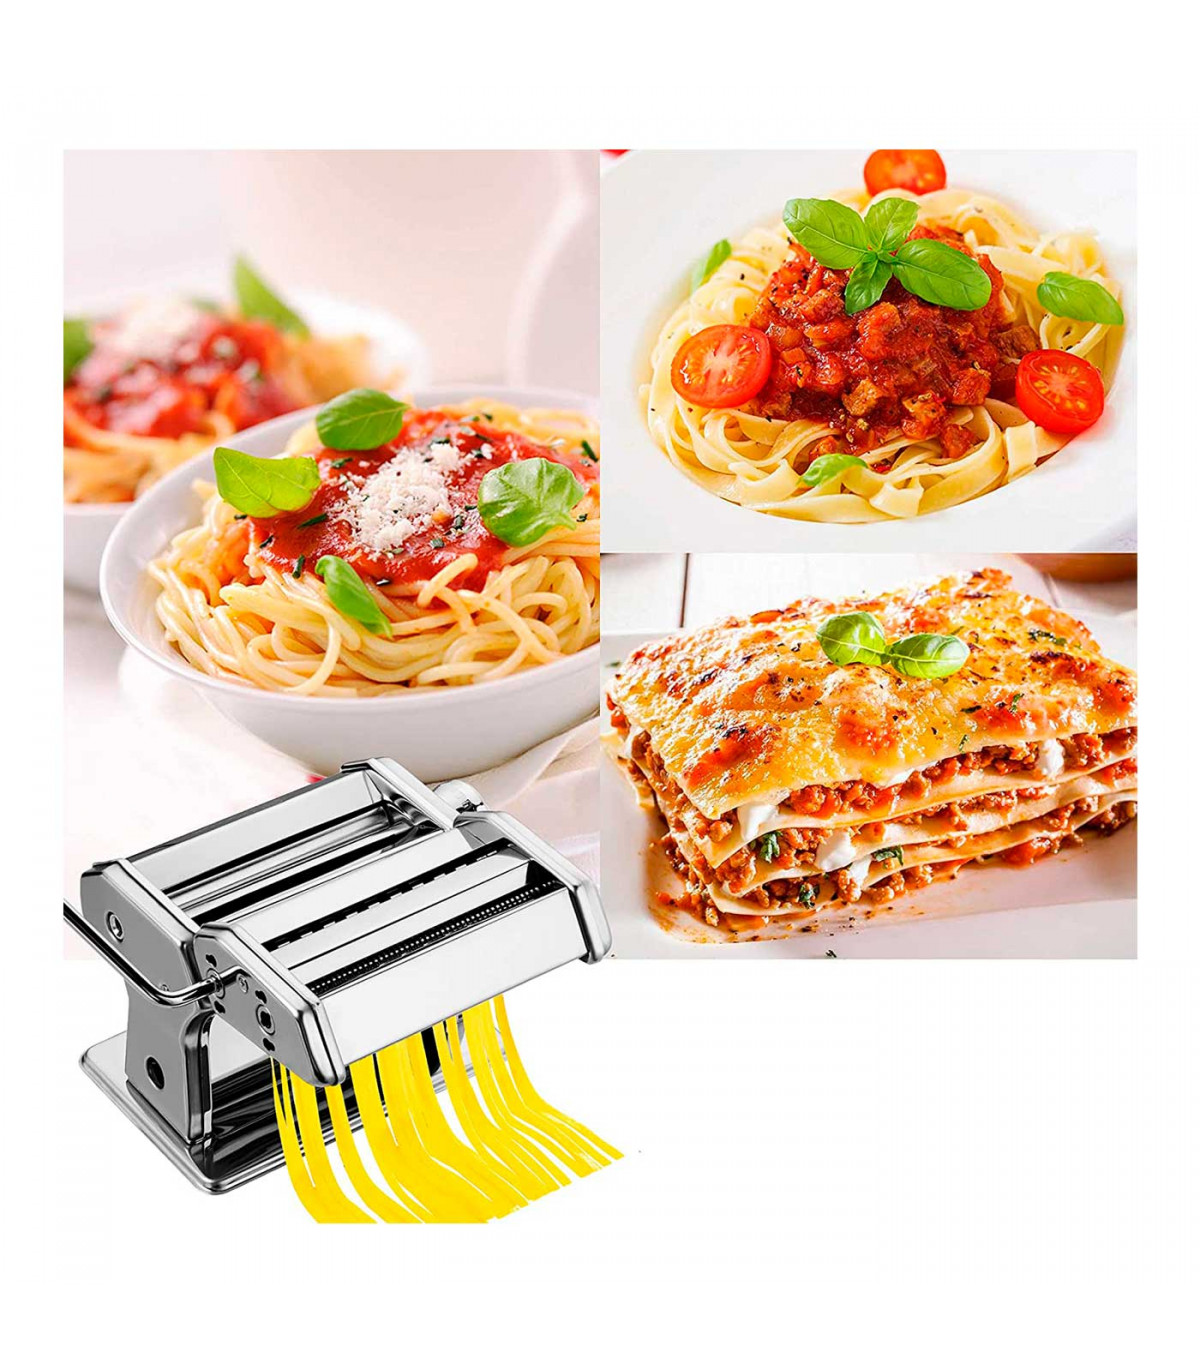 máquina de pasta Bugucat Máquina para hacer pasta de acero inoxidable fácil de usar y limpiar manual cortador con pinza para espaguetis lasaña fresca 